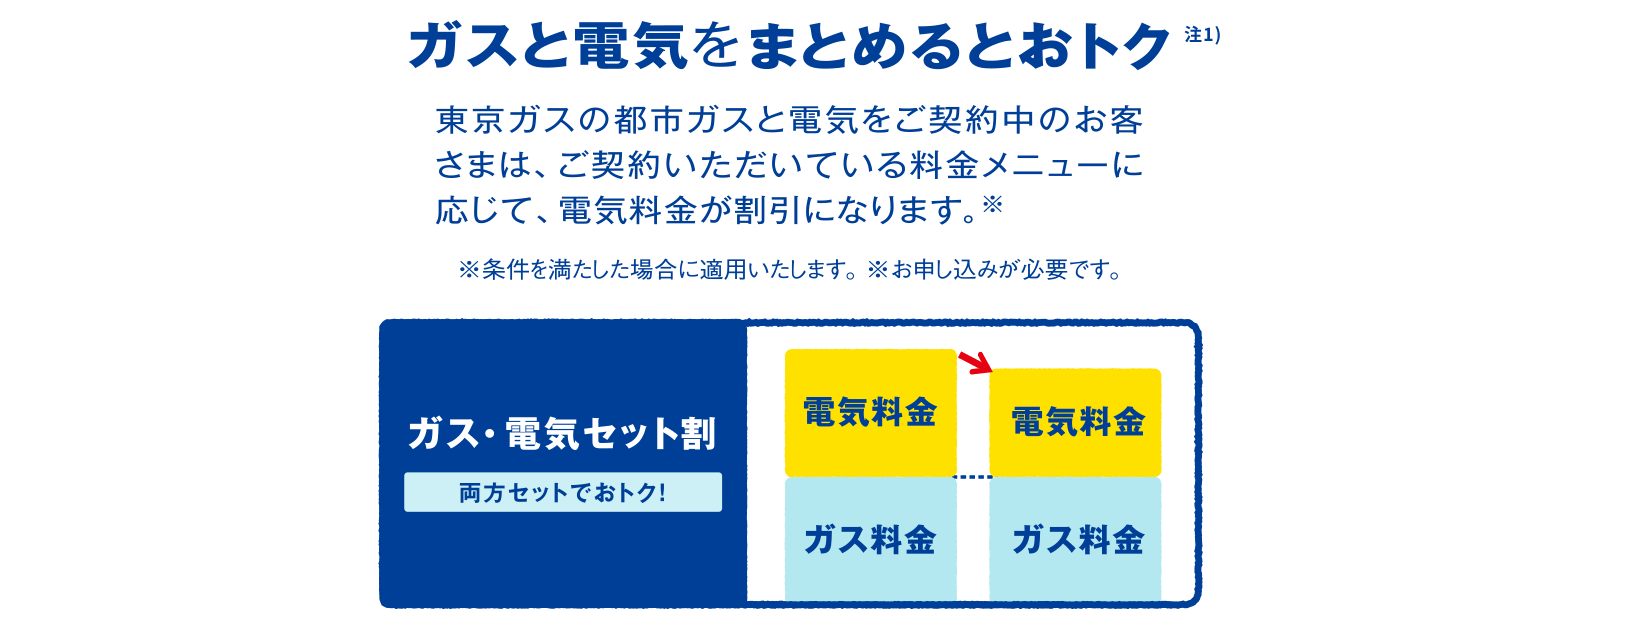 ガスと電気をまとめるとおトク 注1）東京ガスの都市ガスと電気をご契約中のお客さまは、ご契約いただいている料金メニューに応じて、電気料金が割引になります。